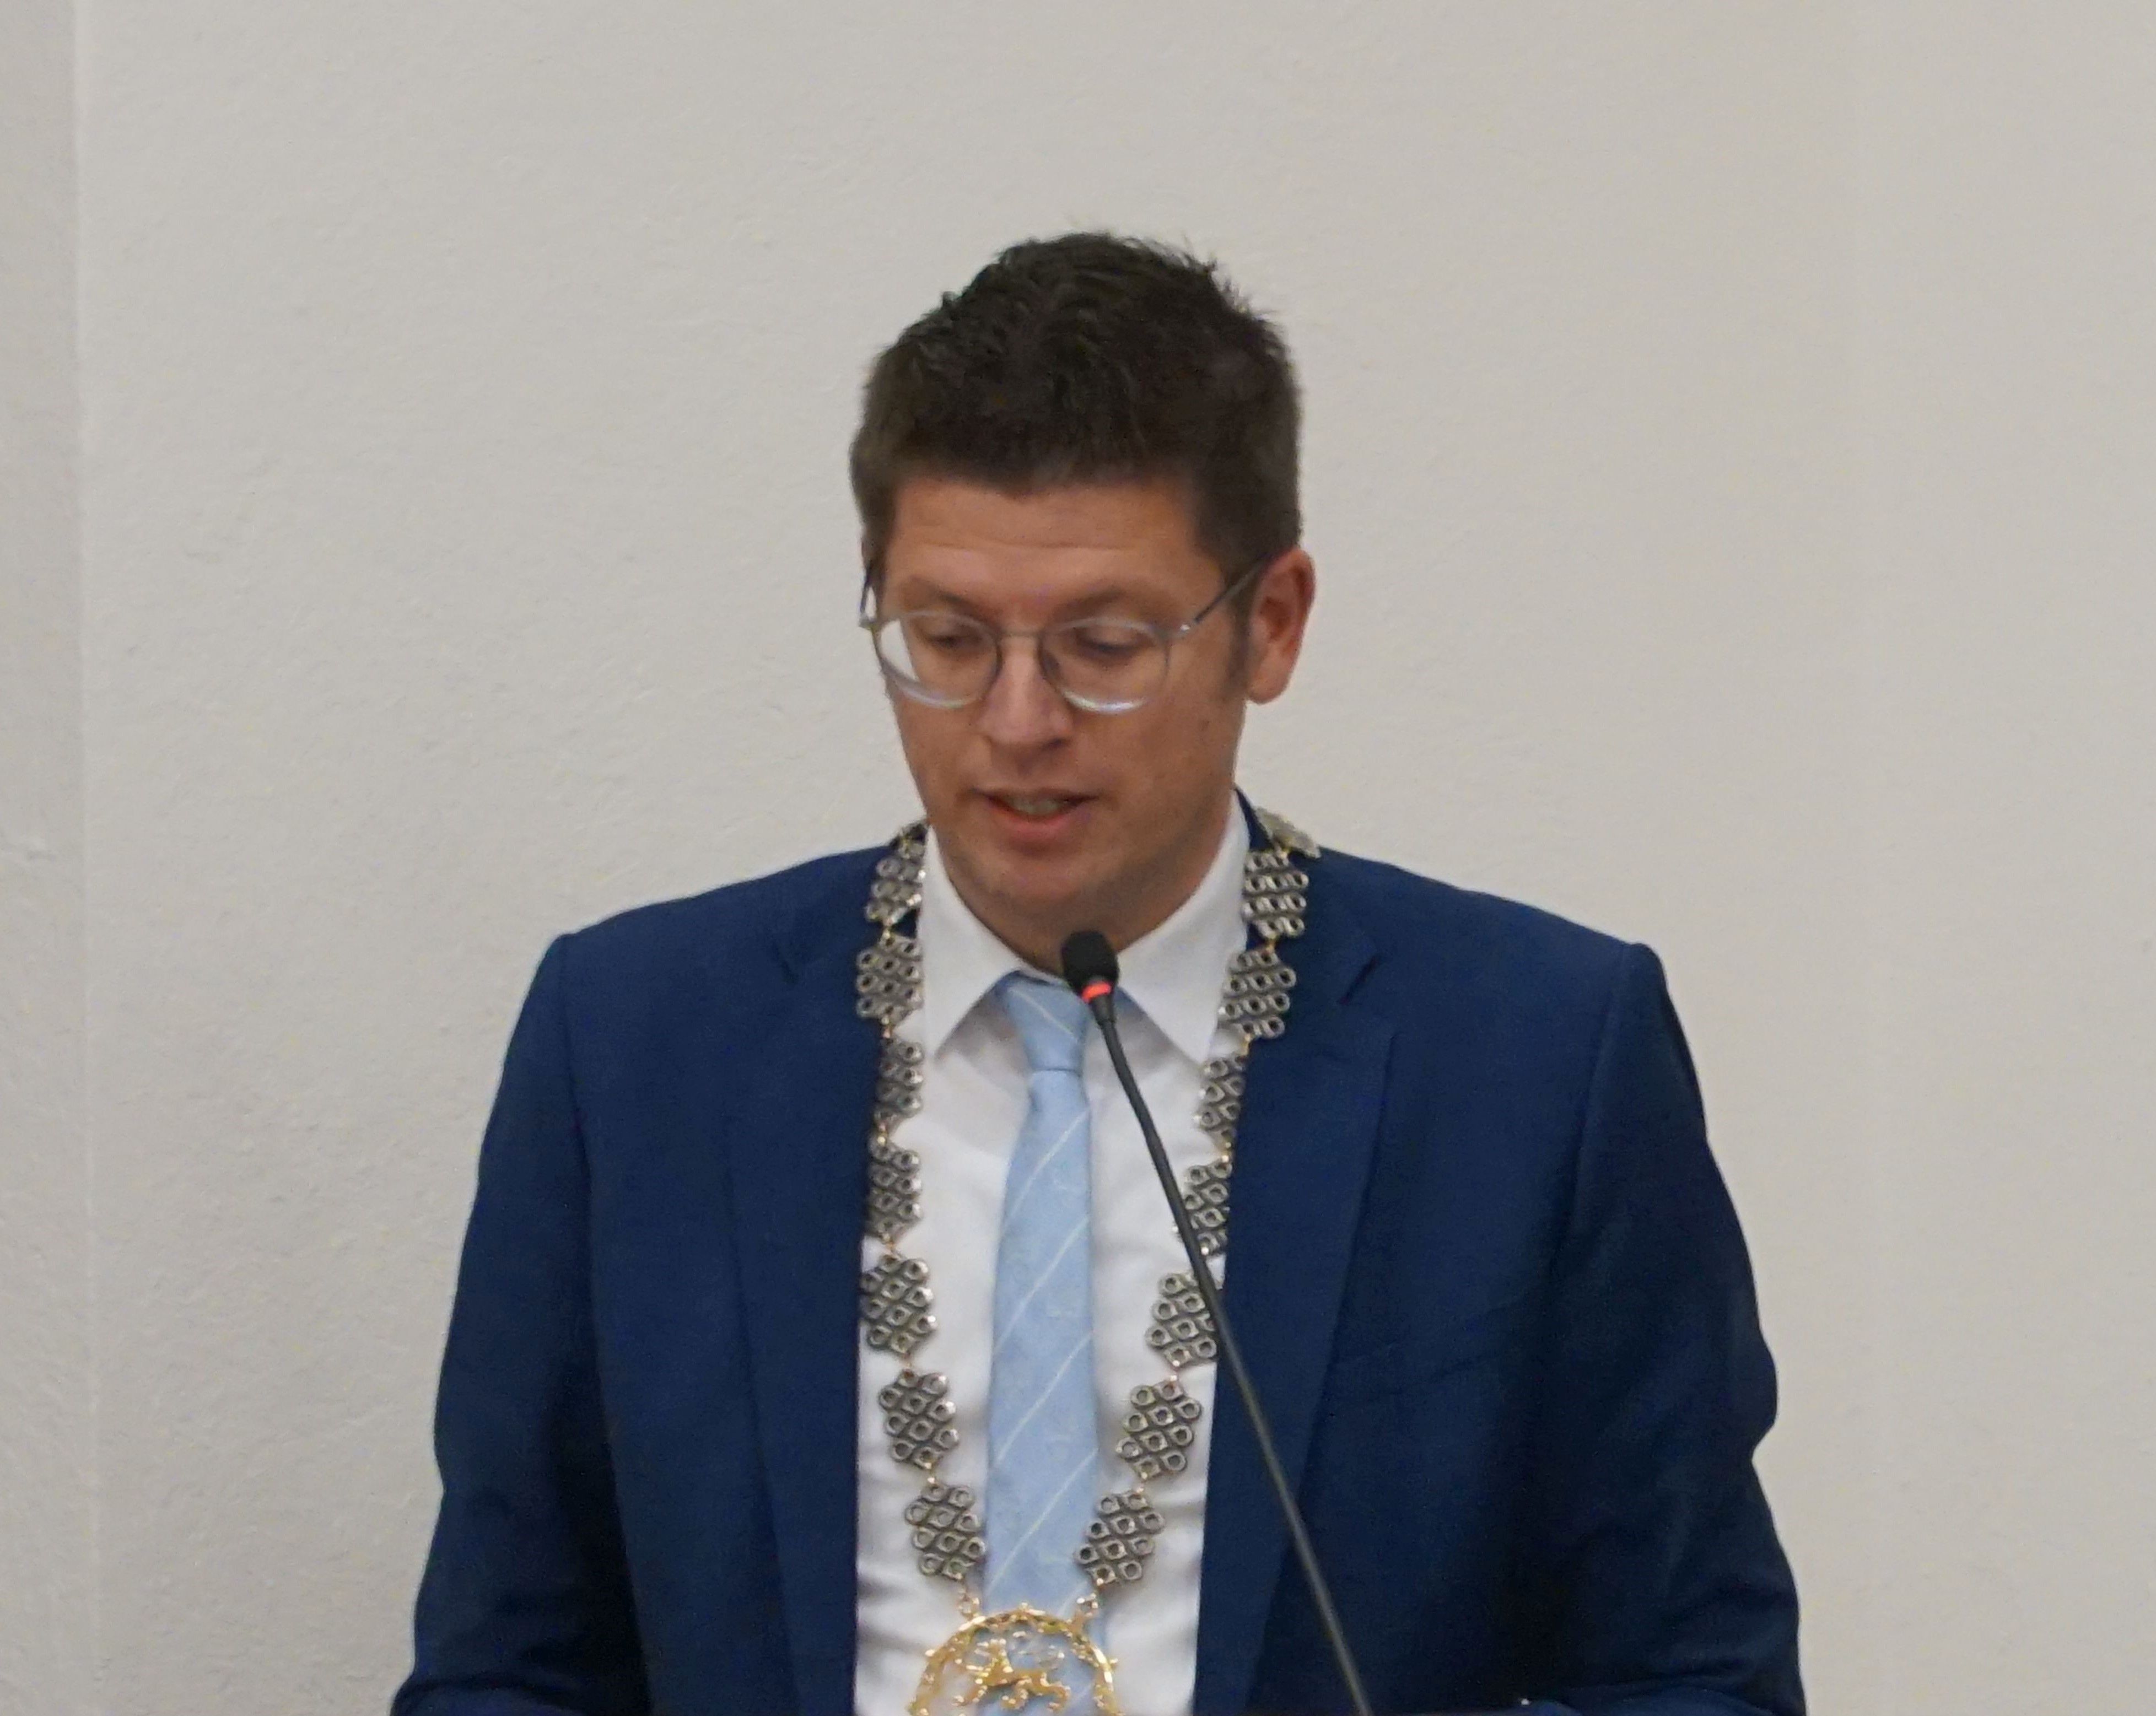 Bürgermeister Stephan Muckel am Rednerpult anl. des Schöffenessens im Alten Rathaus